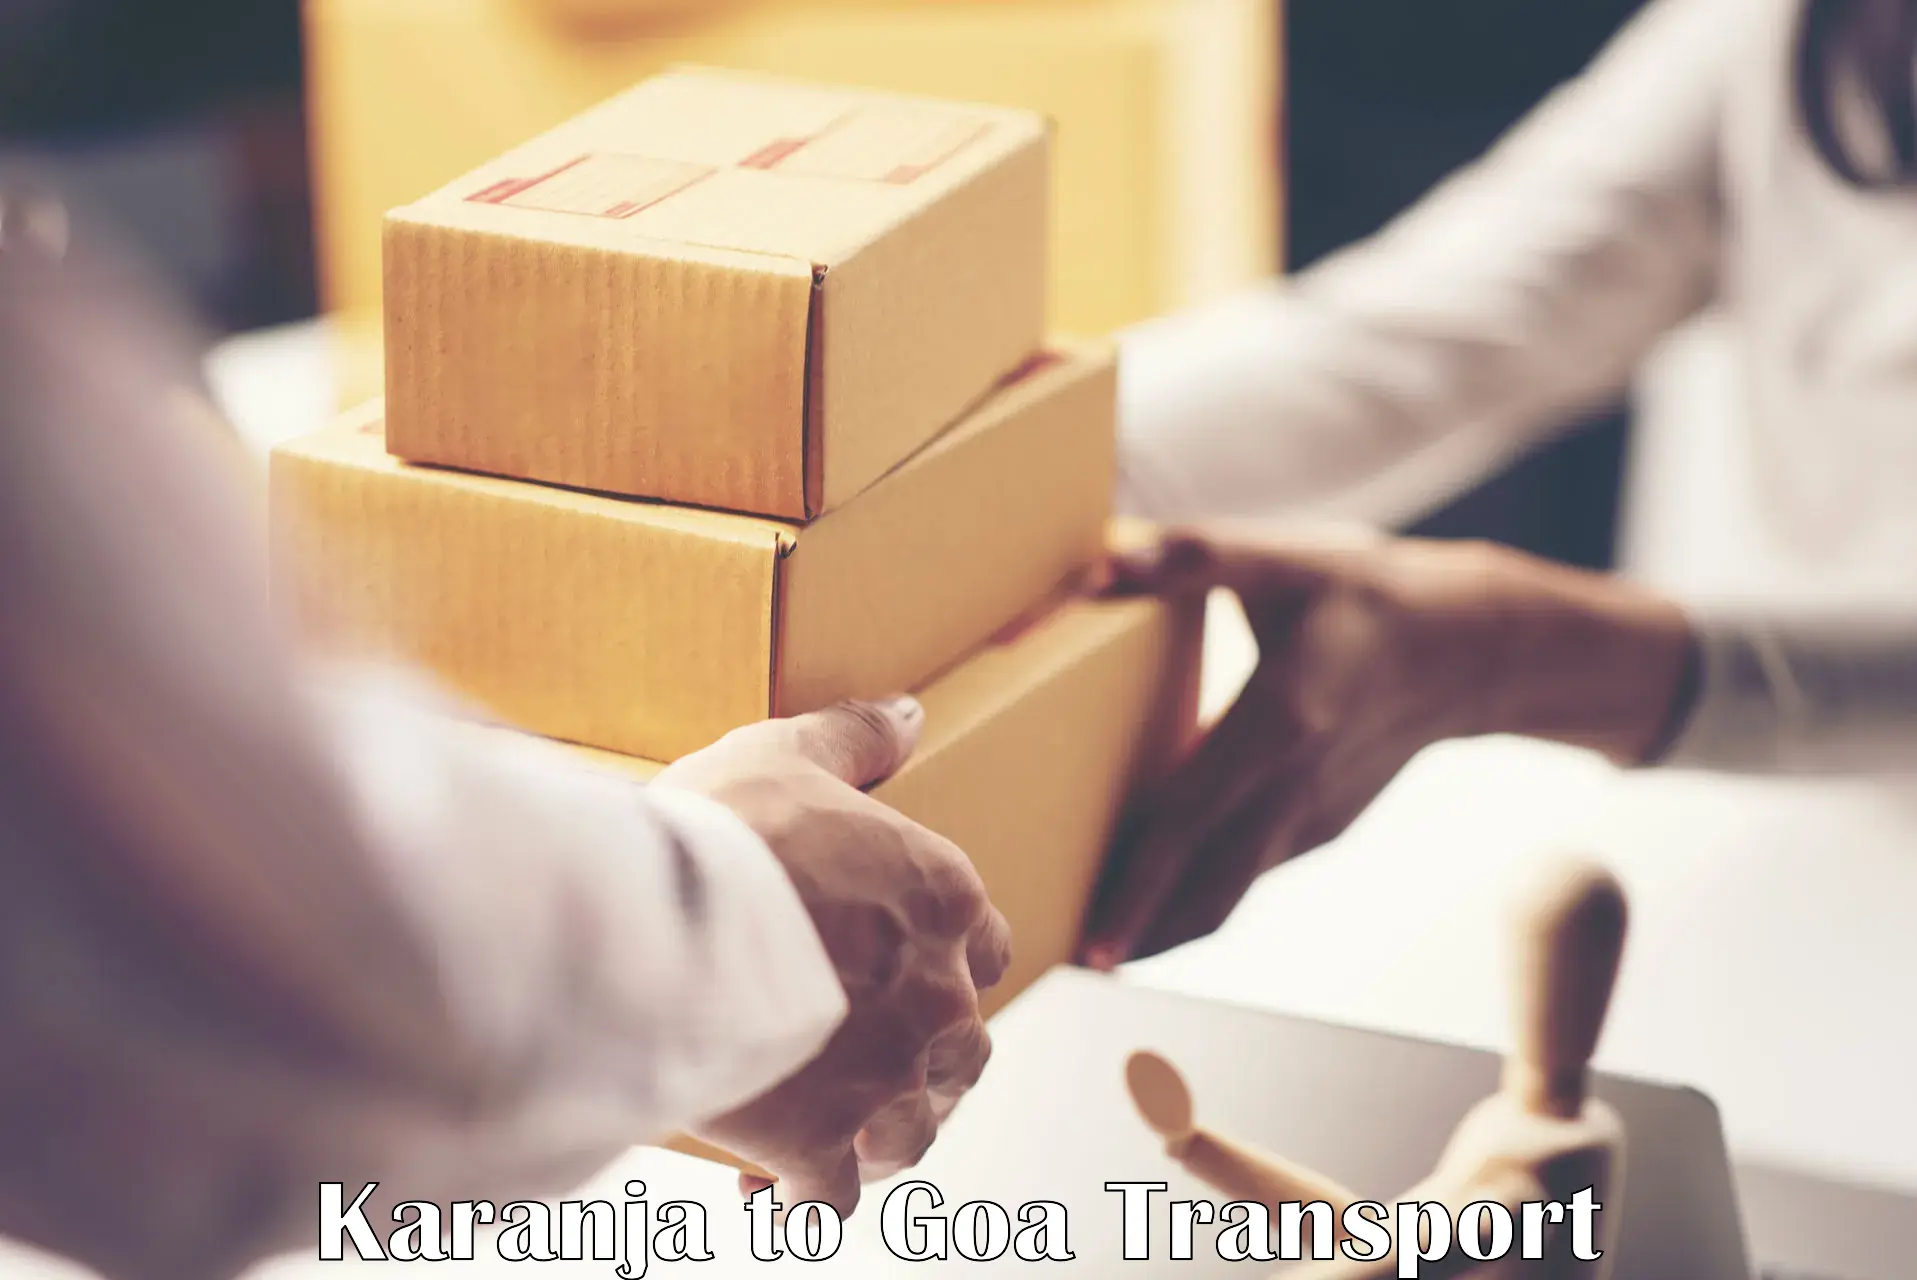 Goods transport services Karanja to Bardez